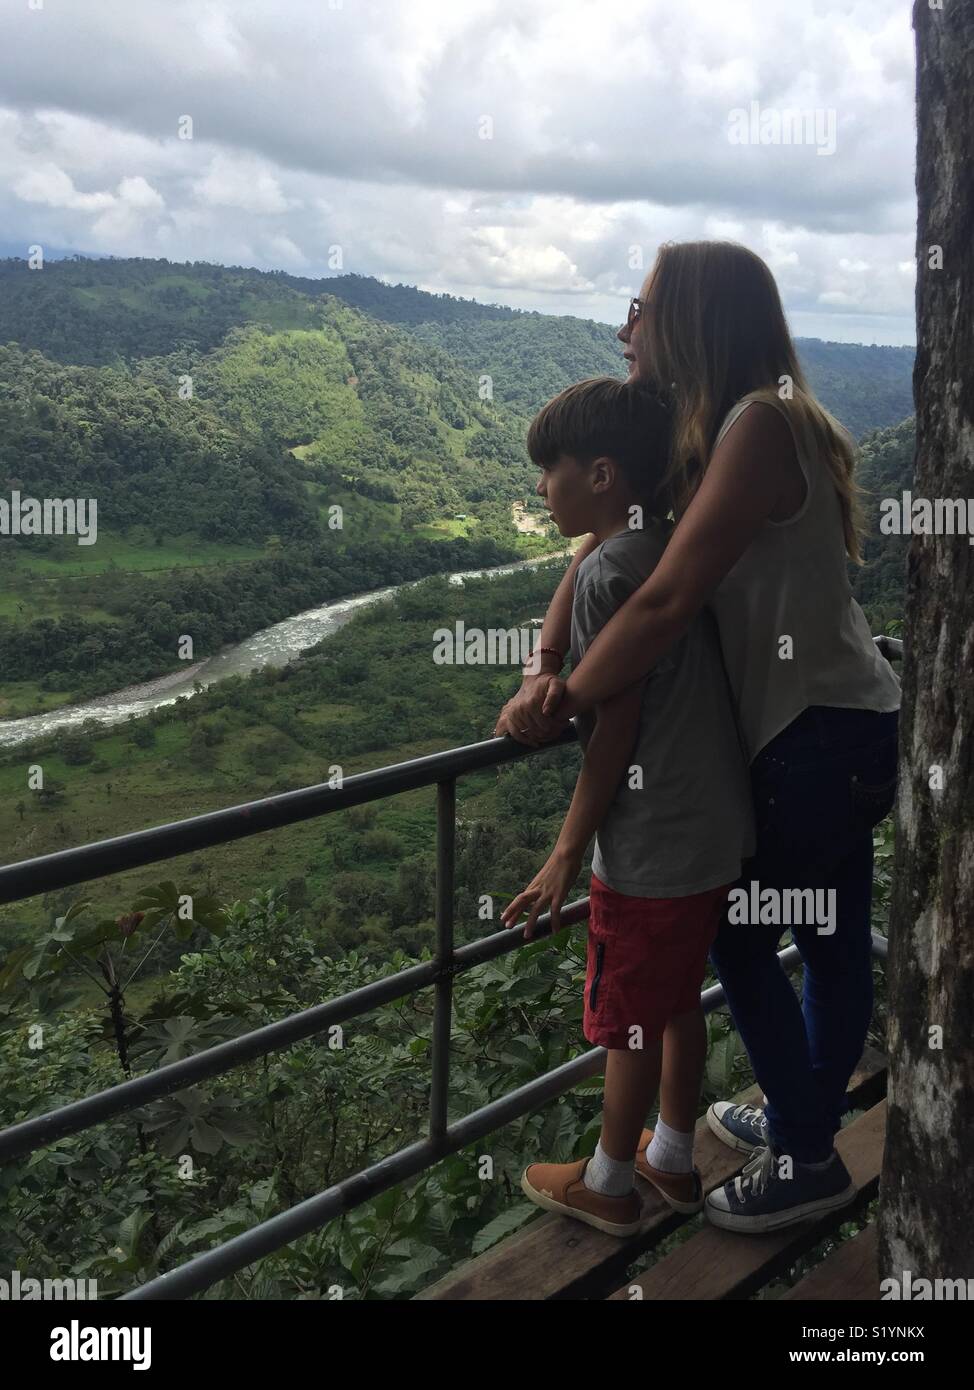 Una madre y su hijo contemplando la naturaleza, observan el río y la Montaña del bosque nuboso en los Bancos en Ecuador Foto Stock